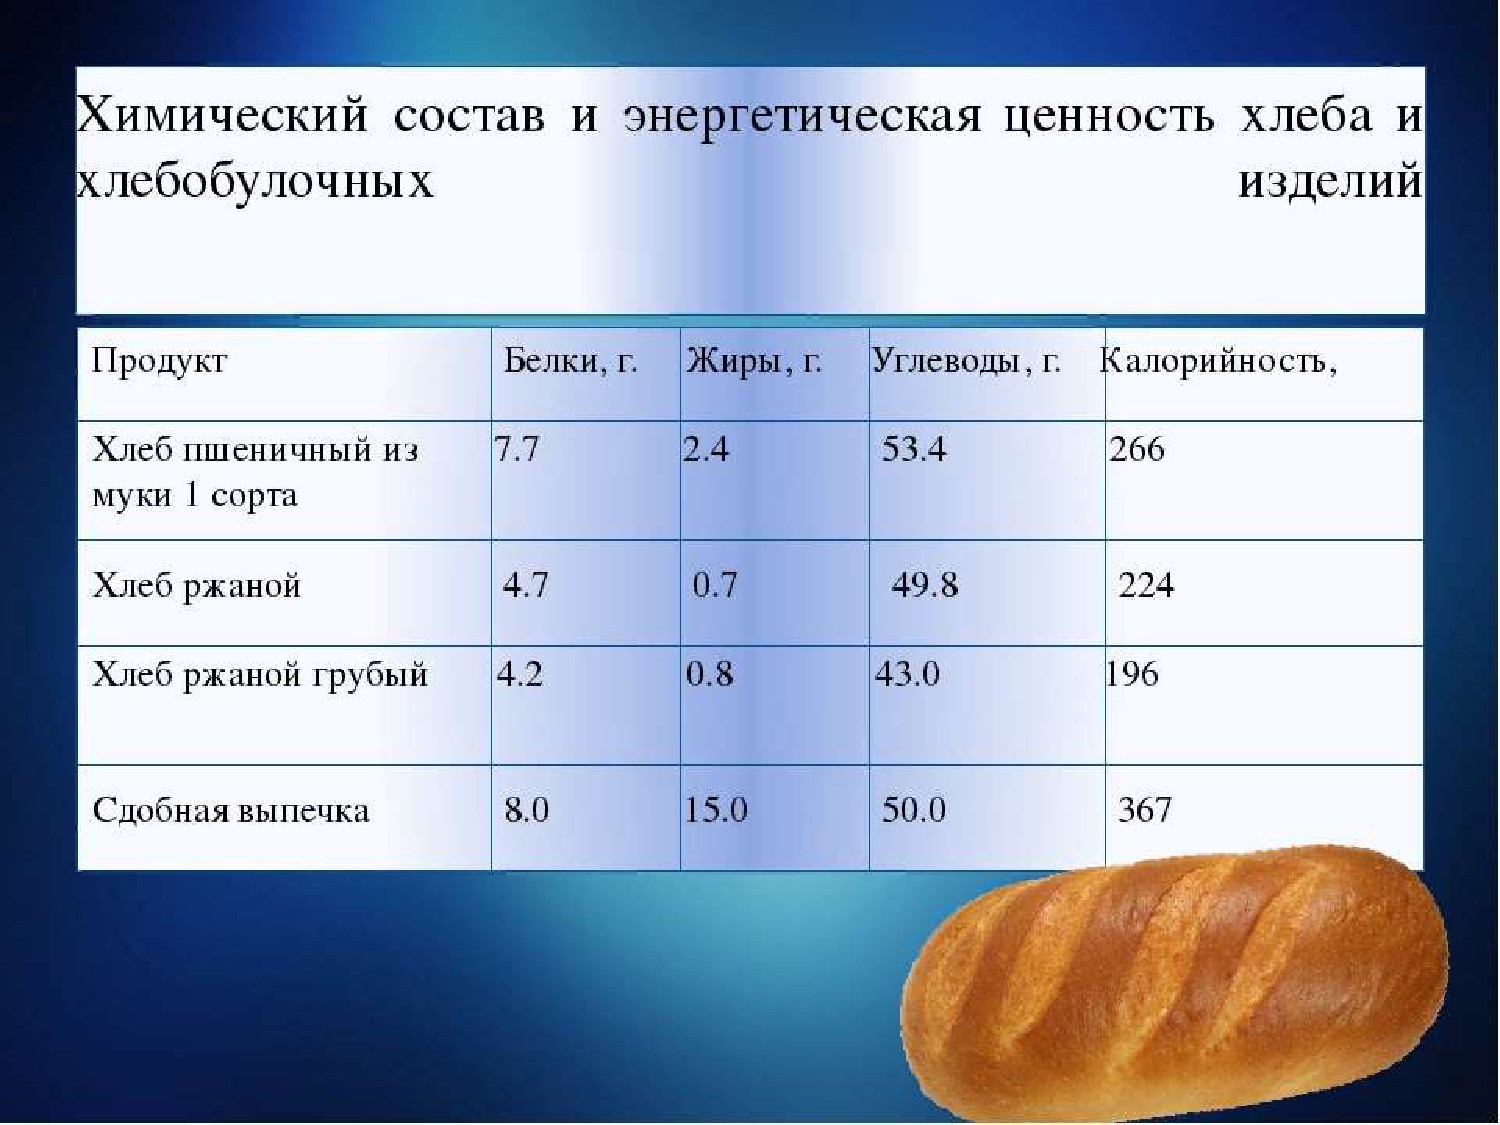 Хлеб отрубной калорийность. Хлеб калорийность на 100 грамм. Хлеб пищевая ценность в 100г. Хлеб пшеничный ккал в 100 гр. Хлеб пшеничный белки жиры углеводы калорийность.